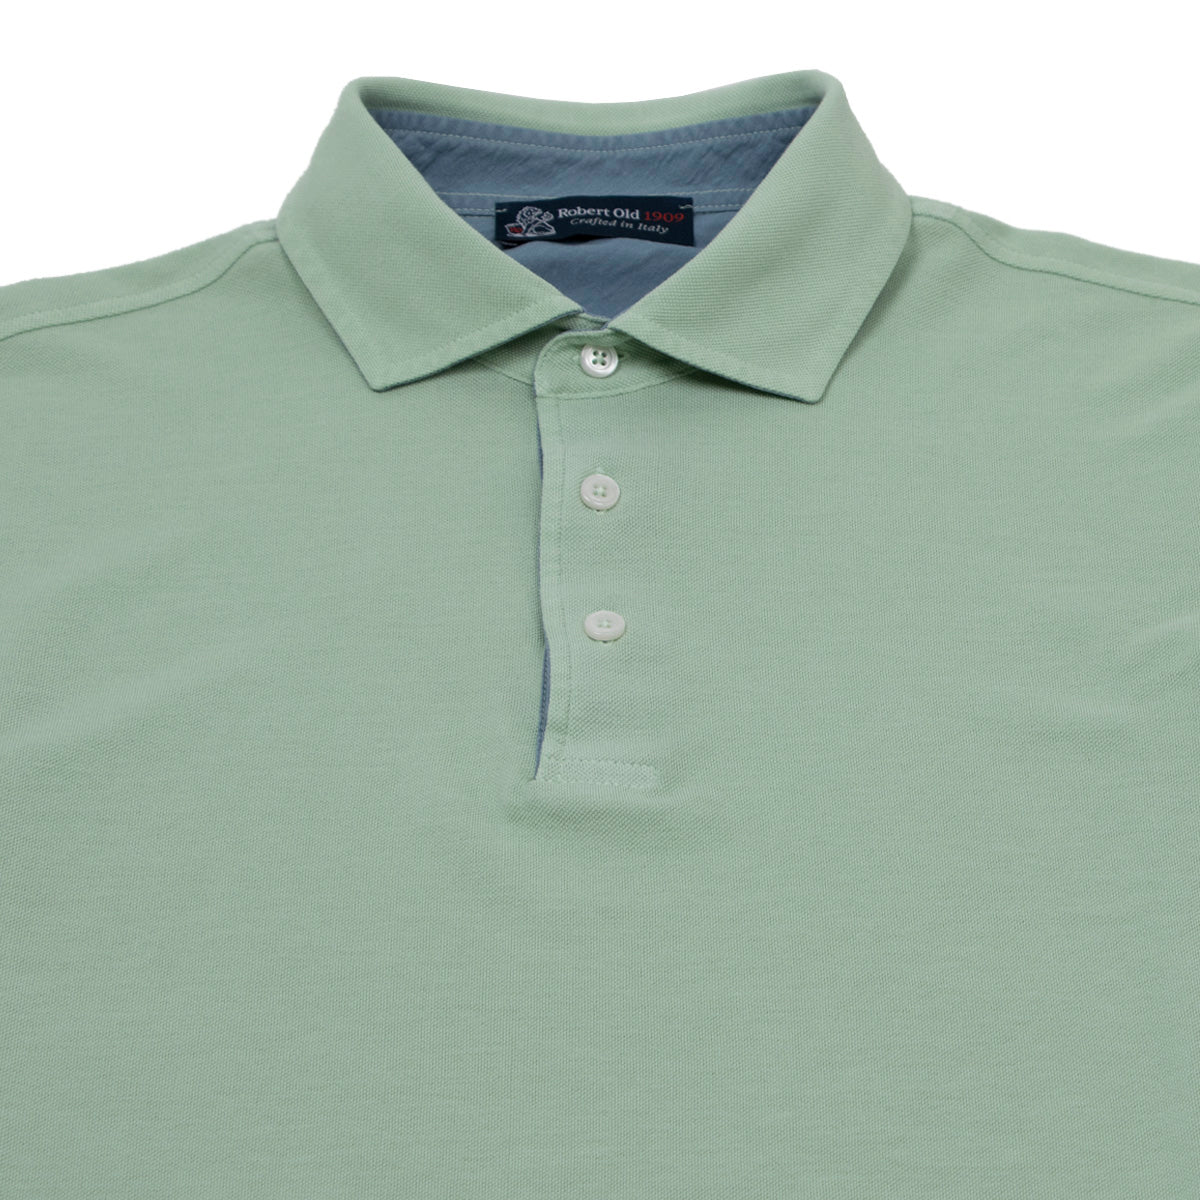 Green & Blue 100% Cotton Short Sleeve Polo Shirt  Robert Old   